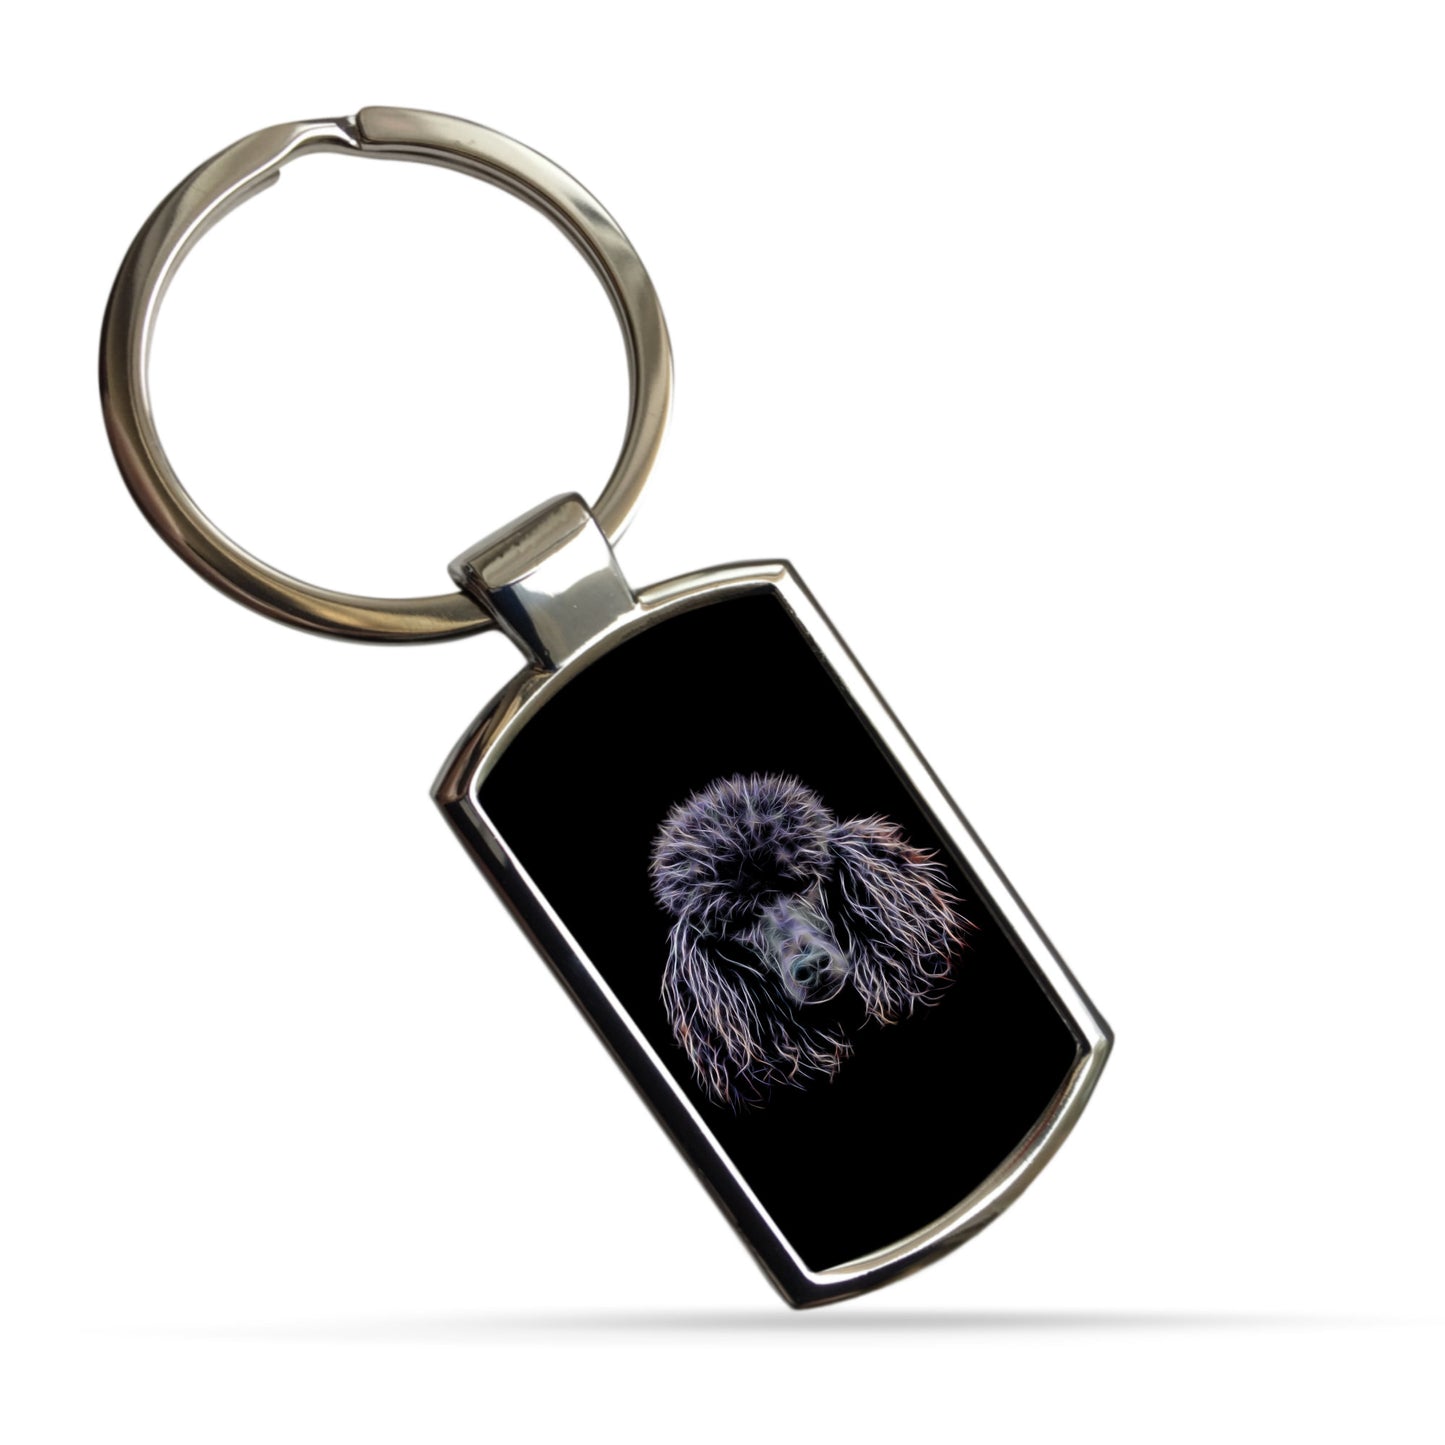 Black Standard Poodle Keychain with Fractal Art Design.